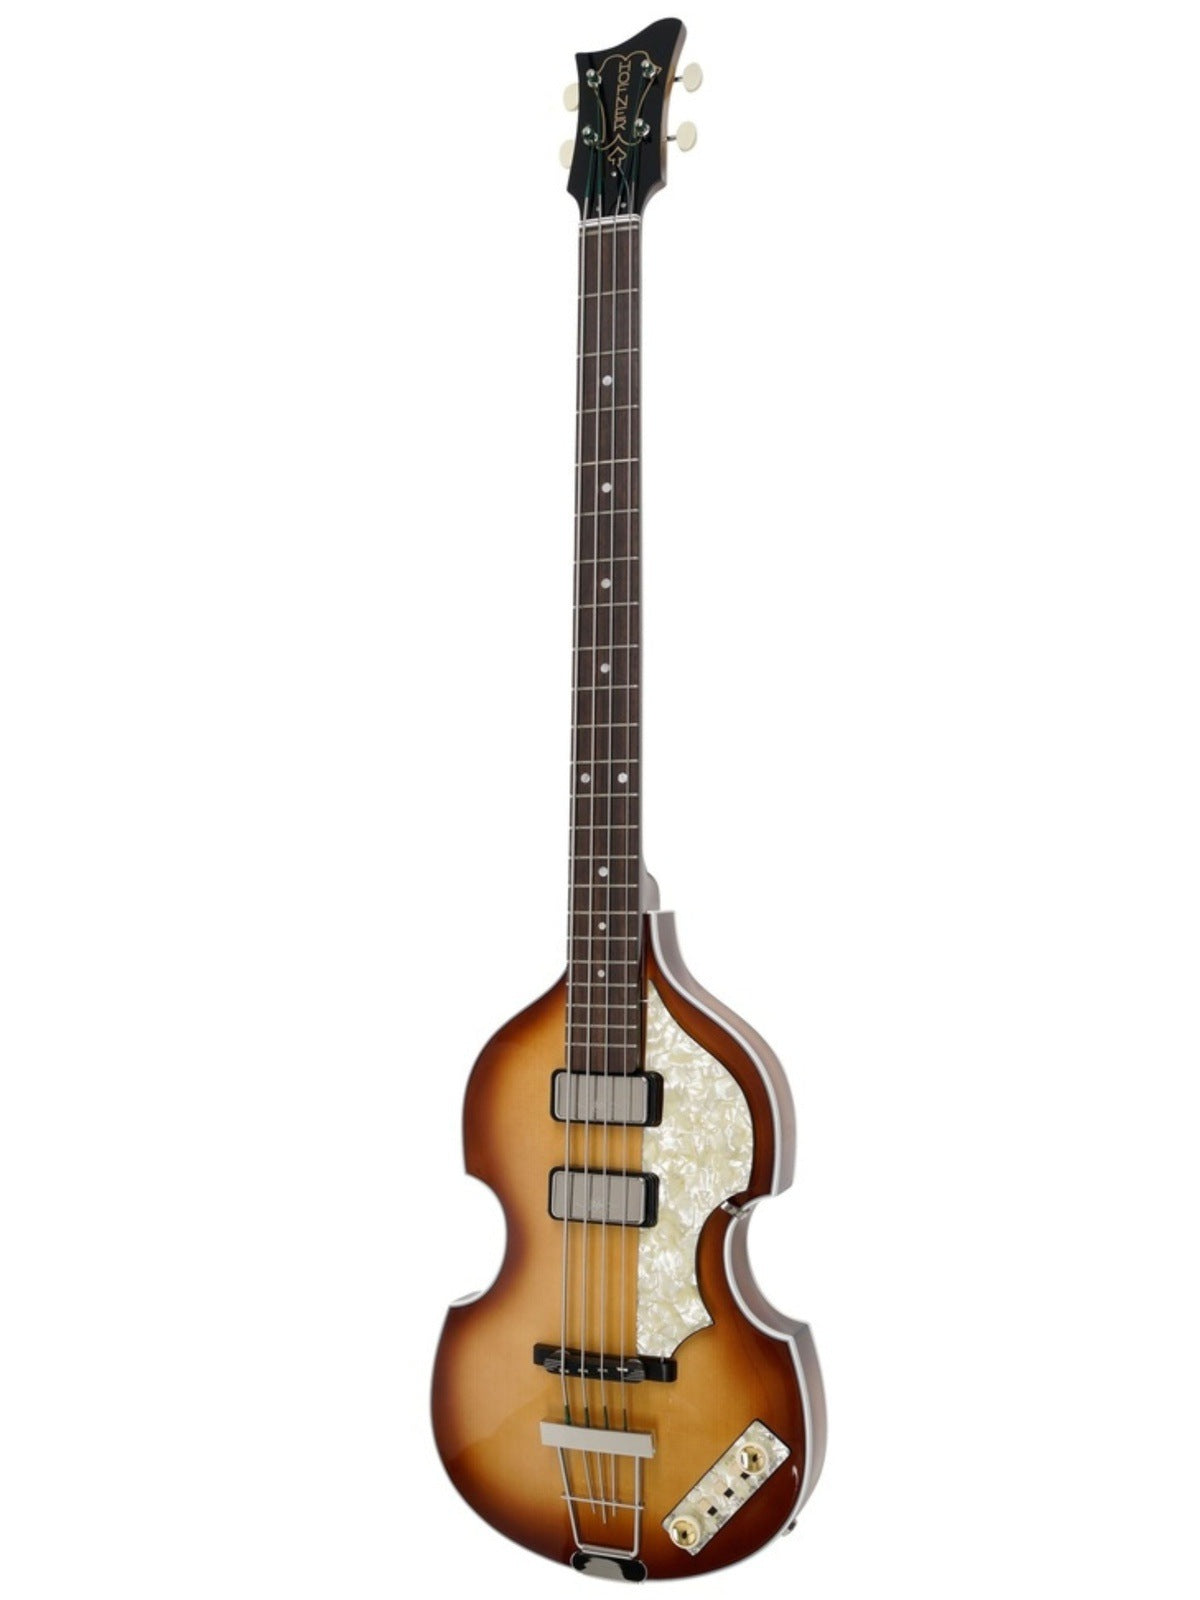 Höfner 500/I '61 'Cavern' Violin Bass